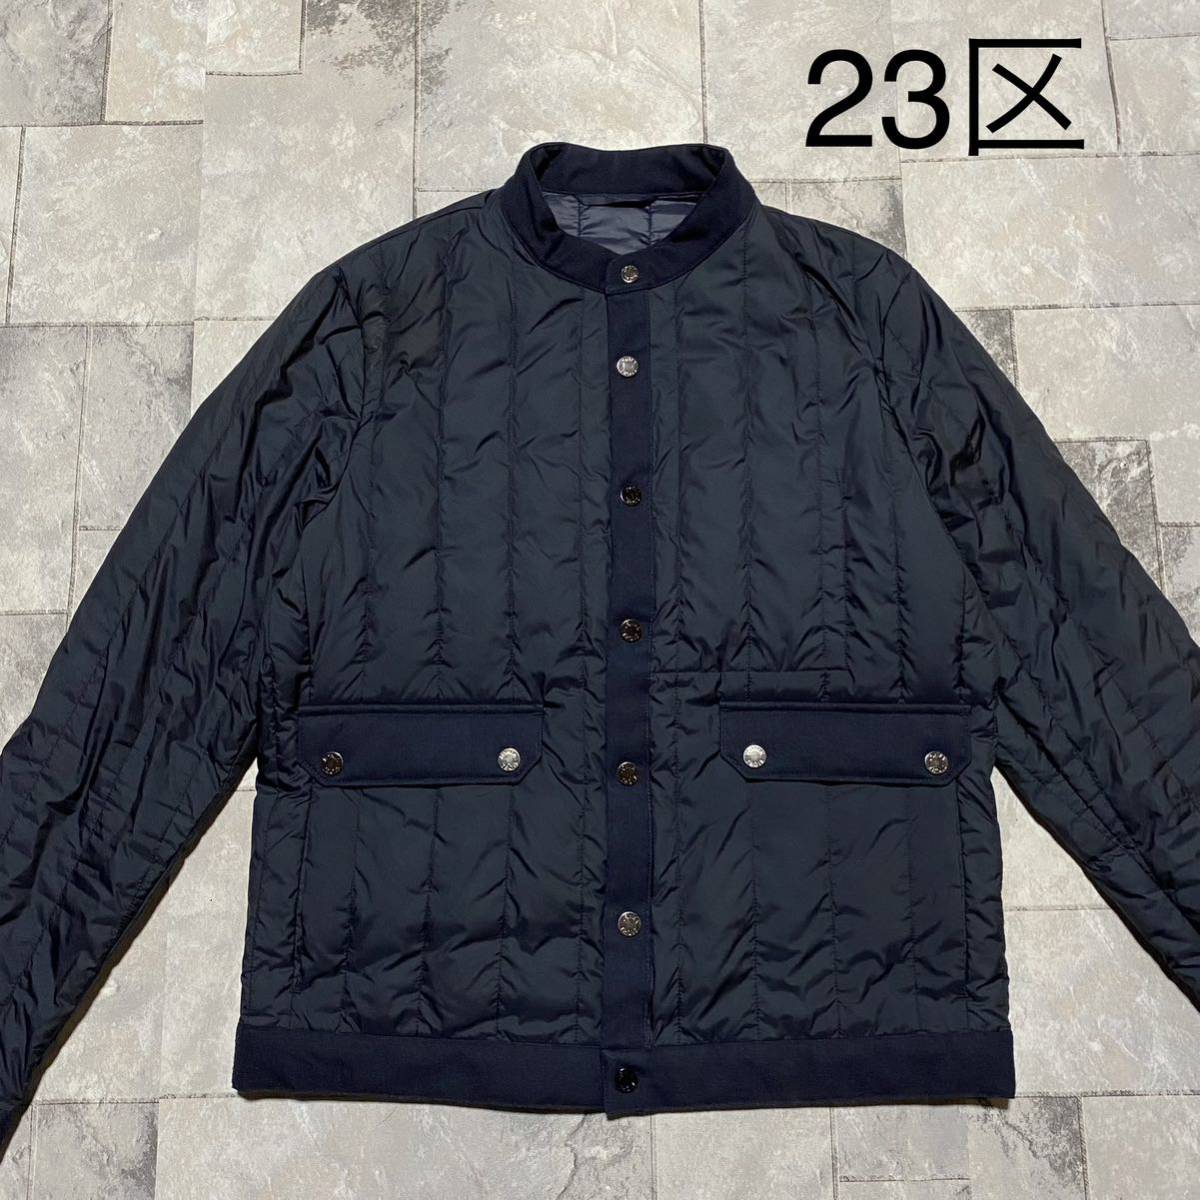 23区 homme ニジュウサンク Down jacket ダウンジャケット 軽量 薄手 スタンドカラー ナイロン ジャケット ネイビー サイズ46(M)玉FS1236